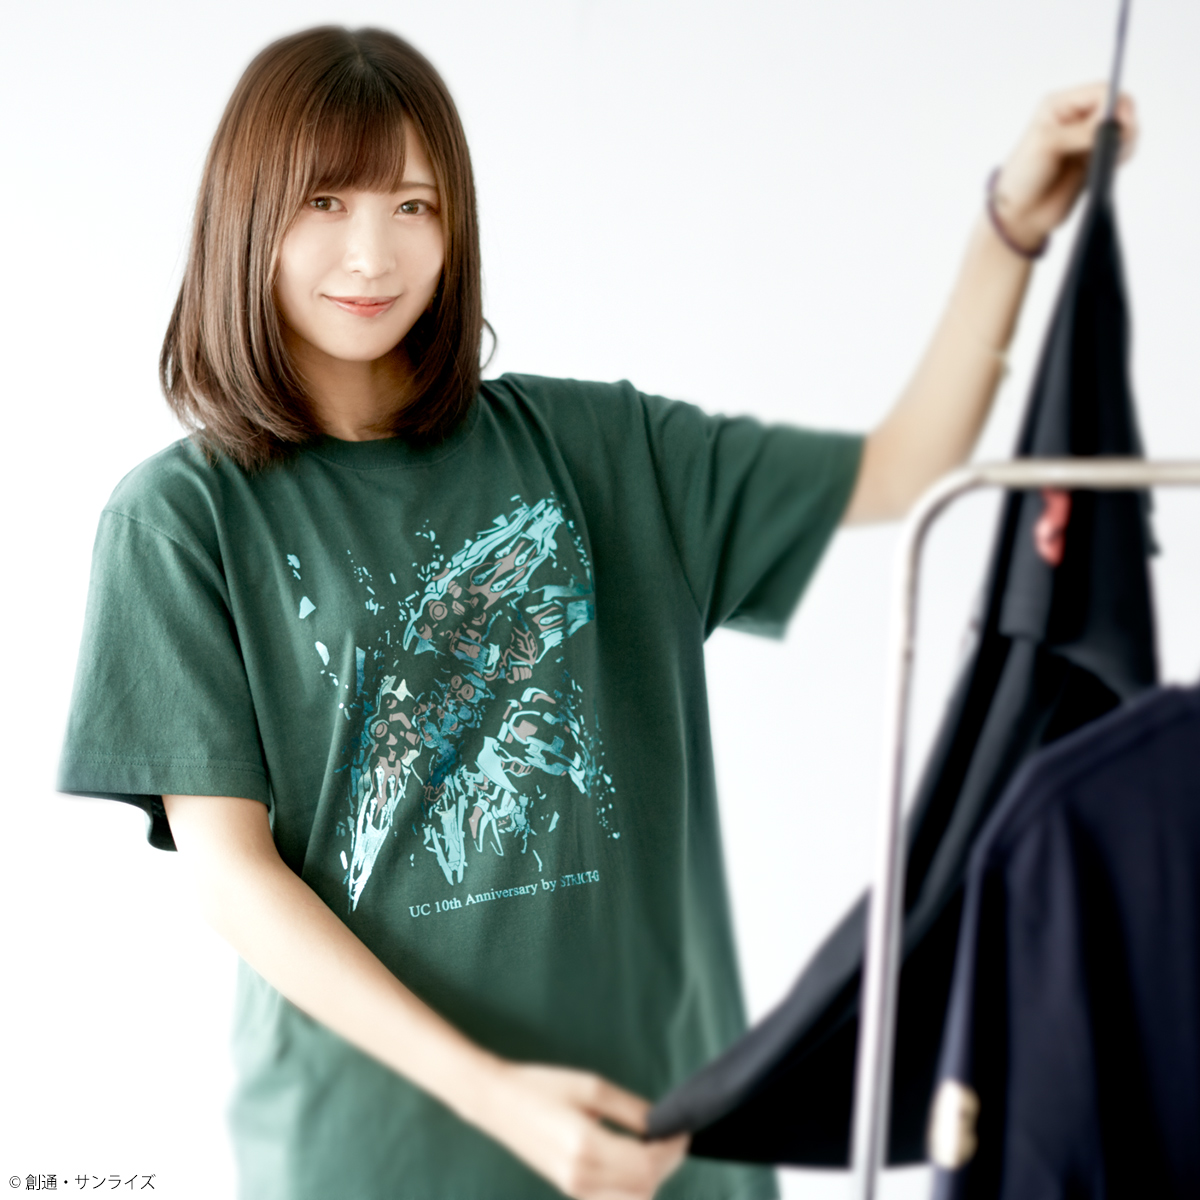 STRICT-G『機動戦士ガンダムUC』 OVA10周年記念 Tシャツ クシャトリヤ柄